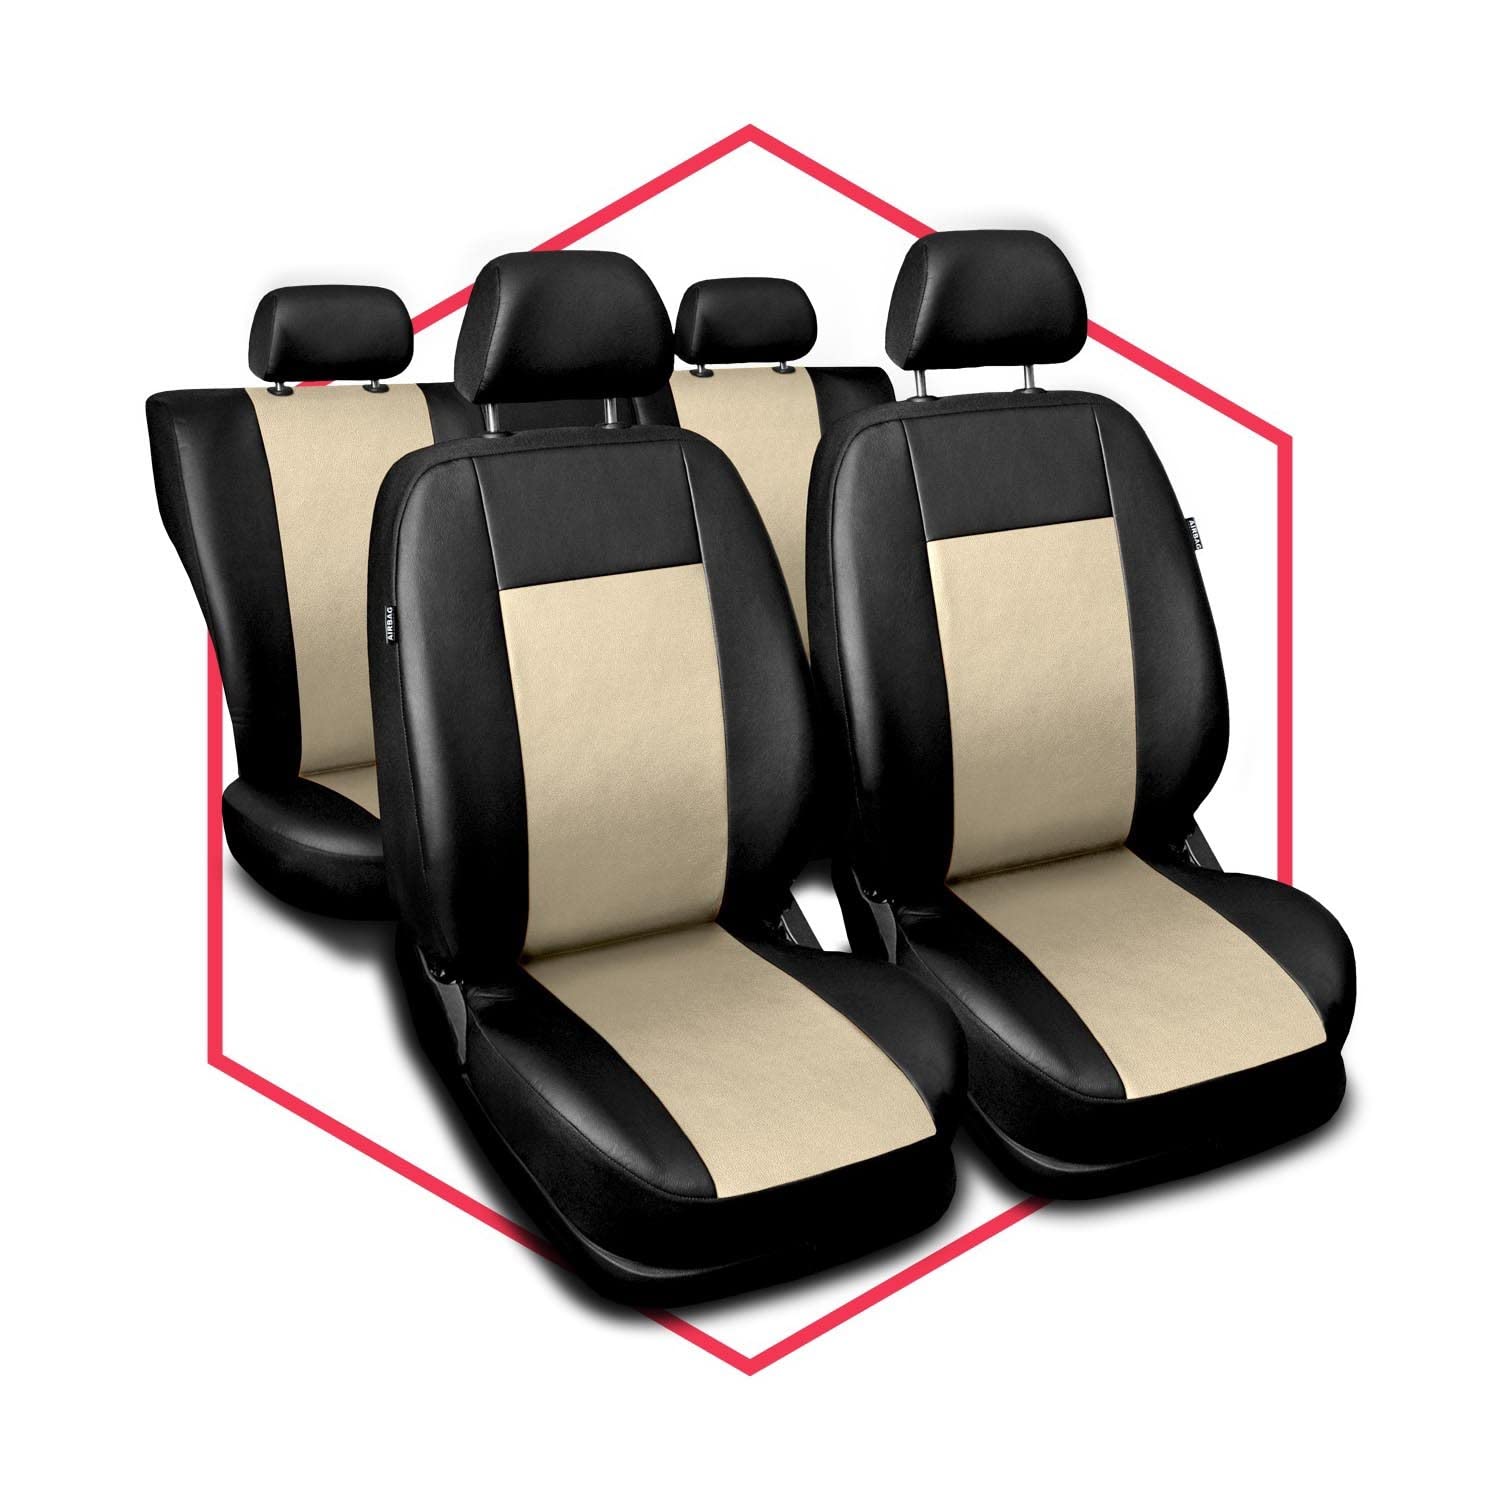 Saferide 3er Set Autositzbezüge PKW universal | Auto Sitzbezüge Kunstleder Beige für Airbag geeignet | für Vordersitze und Rückbank | 1+1 Autositze vorne und 1 Sitzbank hinten teilbar Reißverschlüsse von Saferide